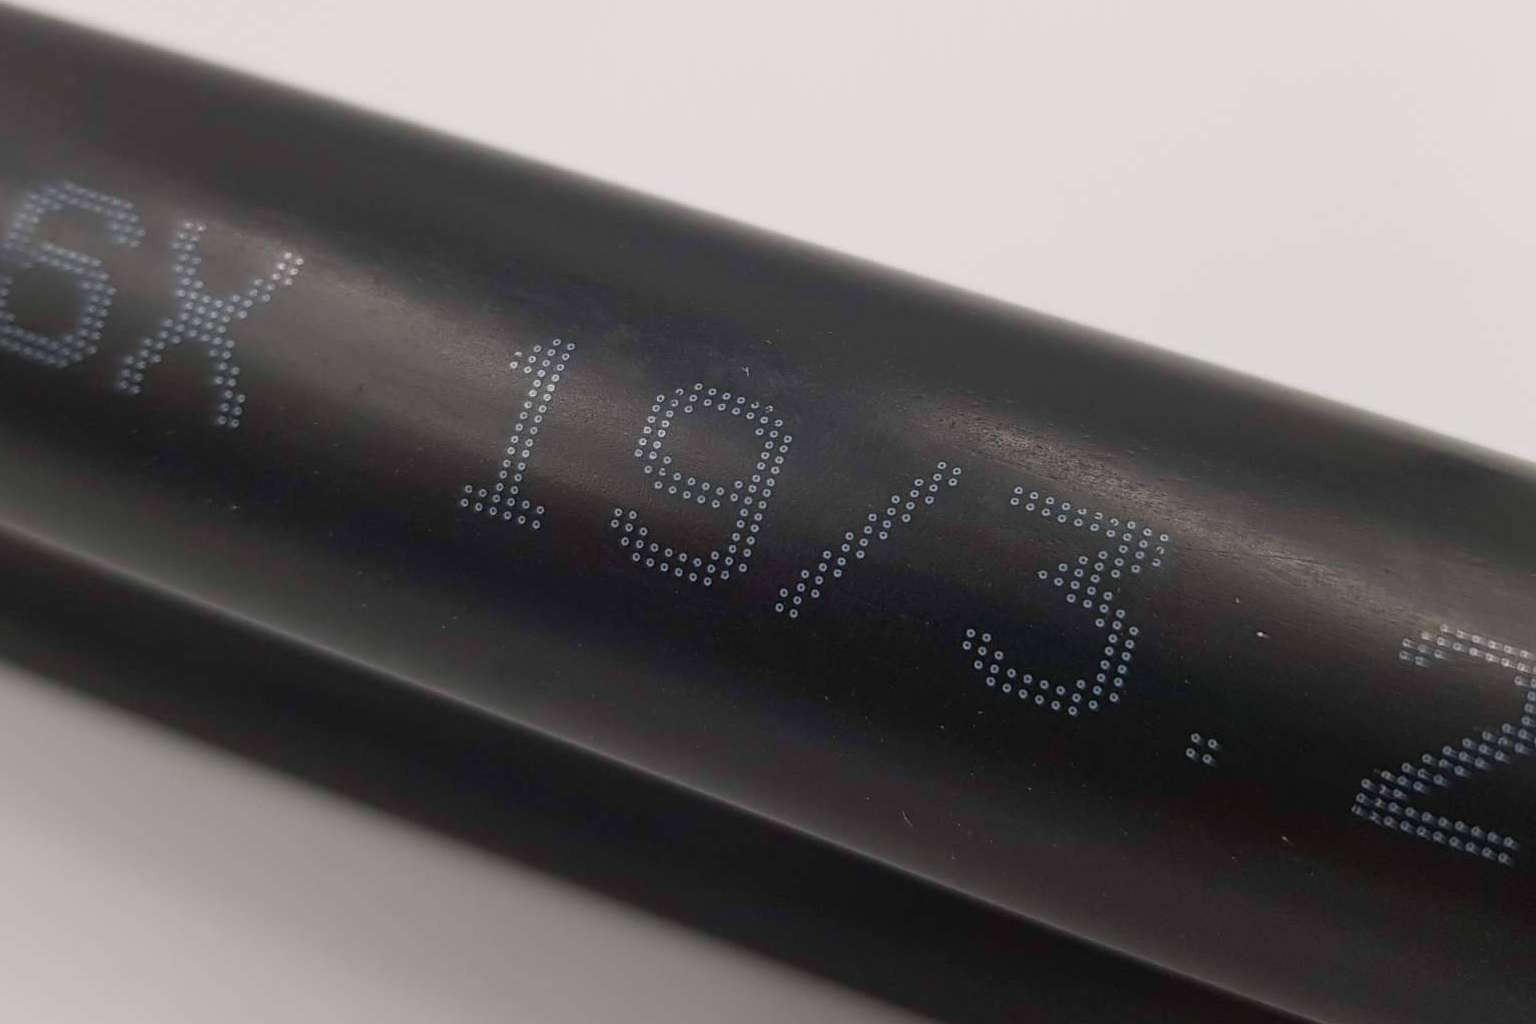  Nuevo avance en tecnología de aislamiento, un tubo retráctil con contracción 6 a 1 y adhesivo interno 